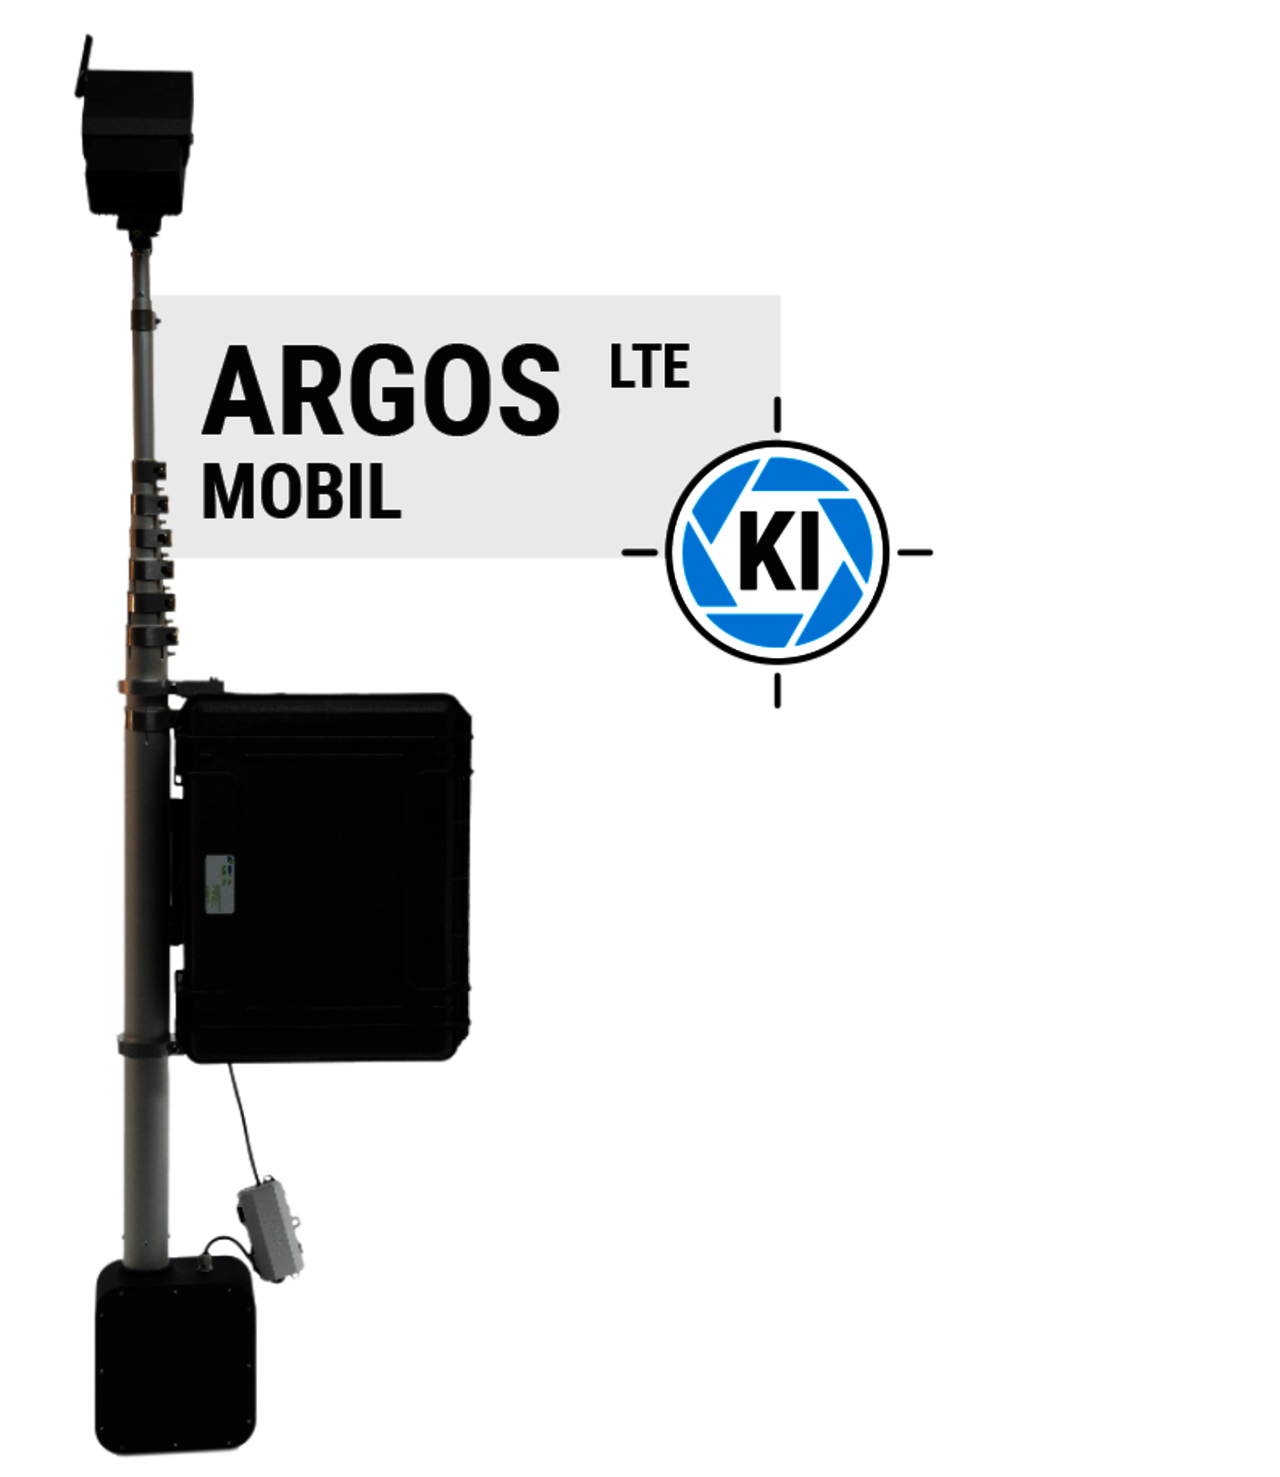 ARGOS mobil LTE - künstliche Intelligenz